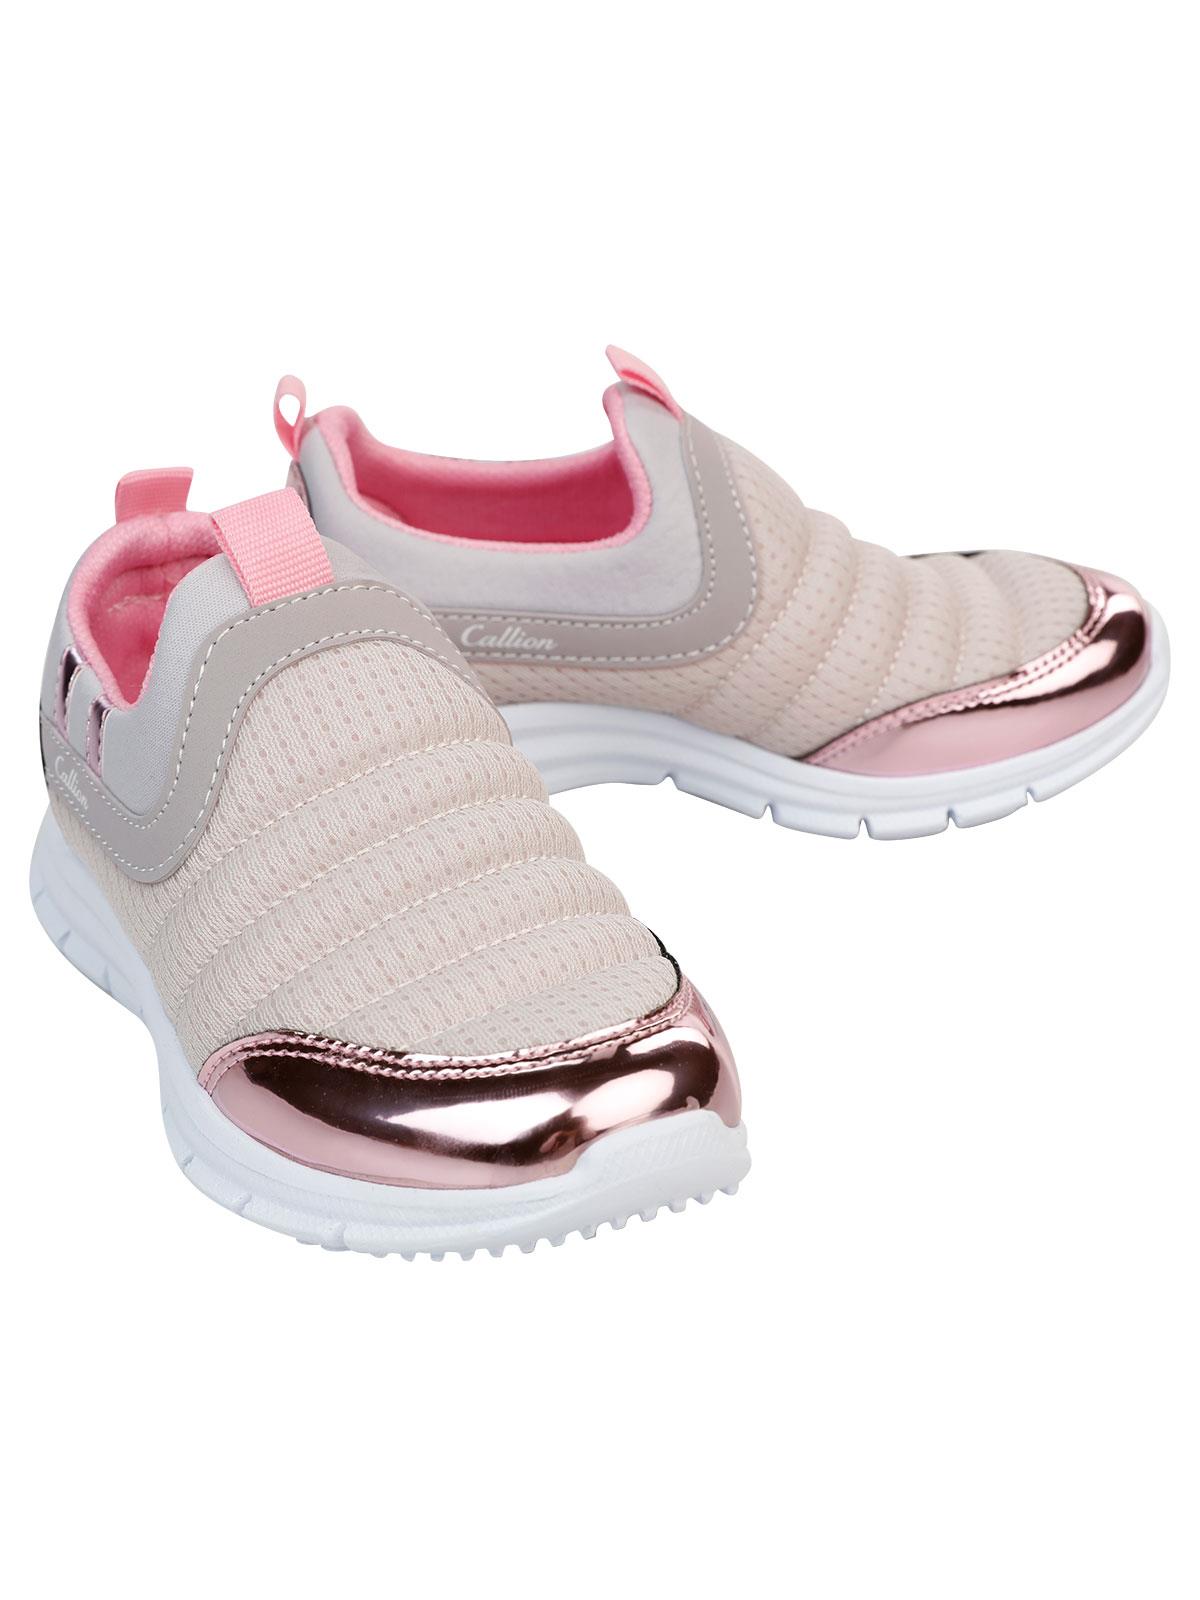 Callion Kız Çocuk Spor Ayakkabı 31-35 Numara Pembe